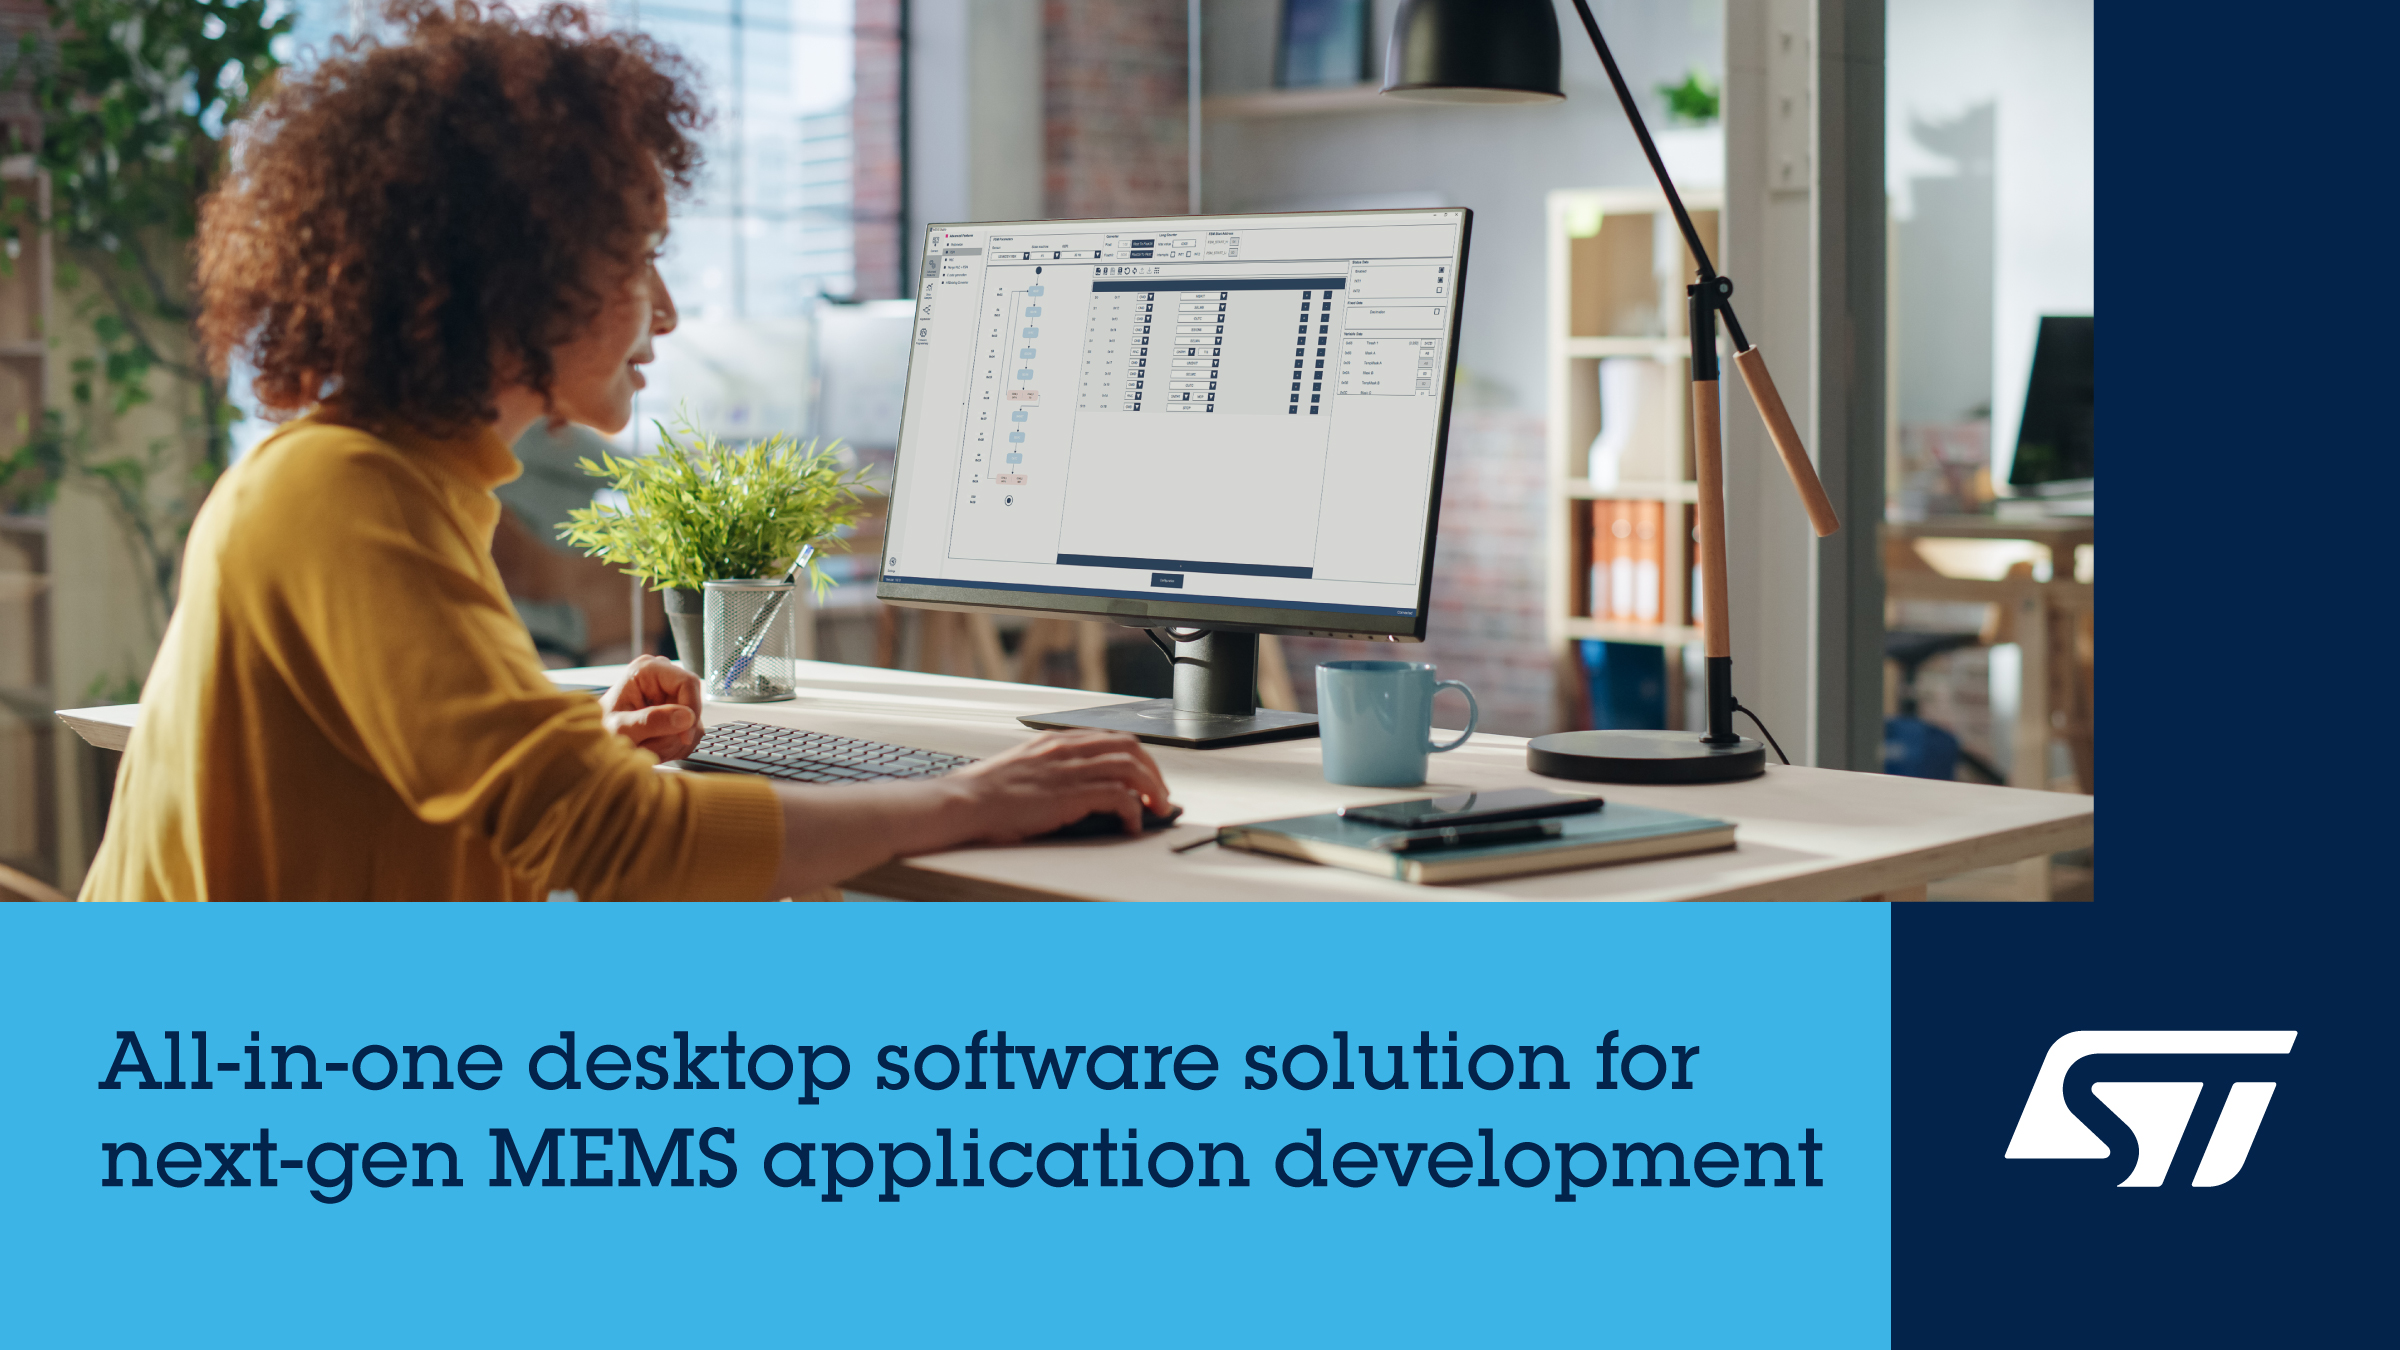 意法半导体通过全新的一体化MEMS Studio桌面软件解决方案提升提升传感器应用开发者的创造力